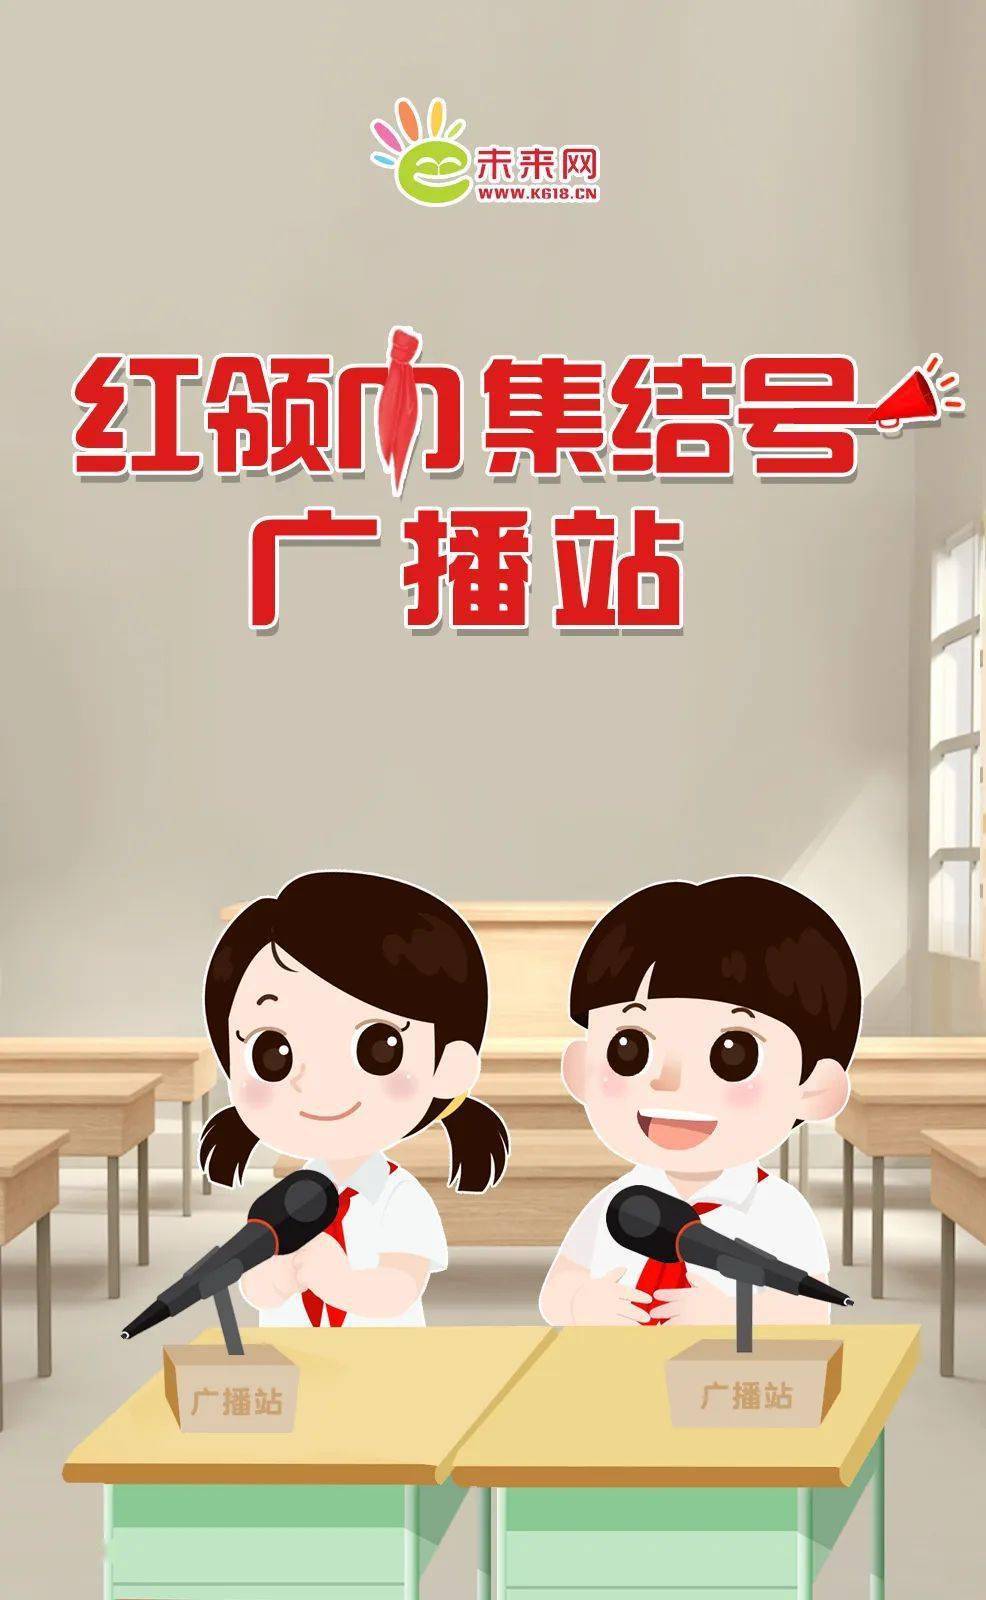 红领巾广播站宣传海报图片